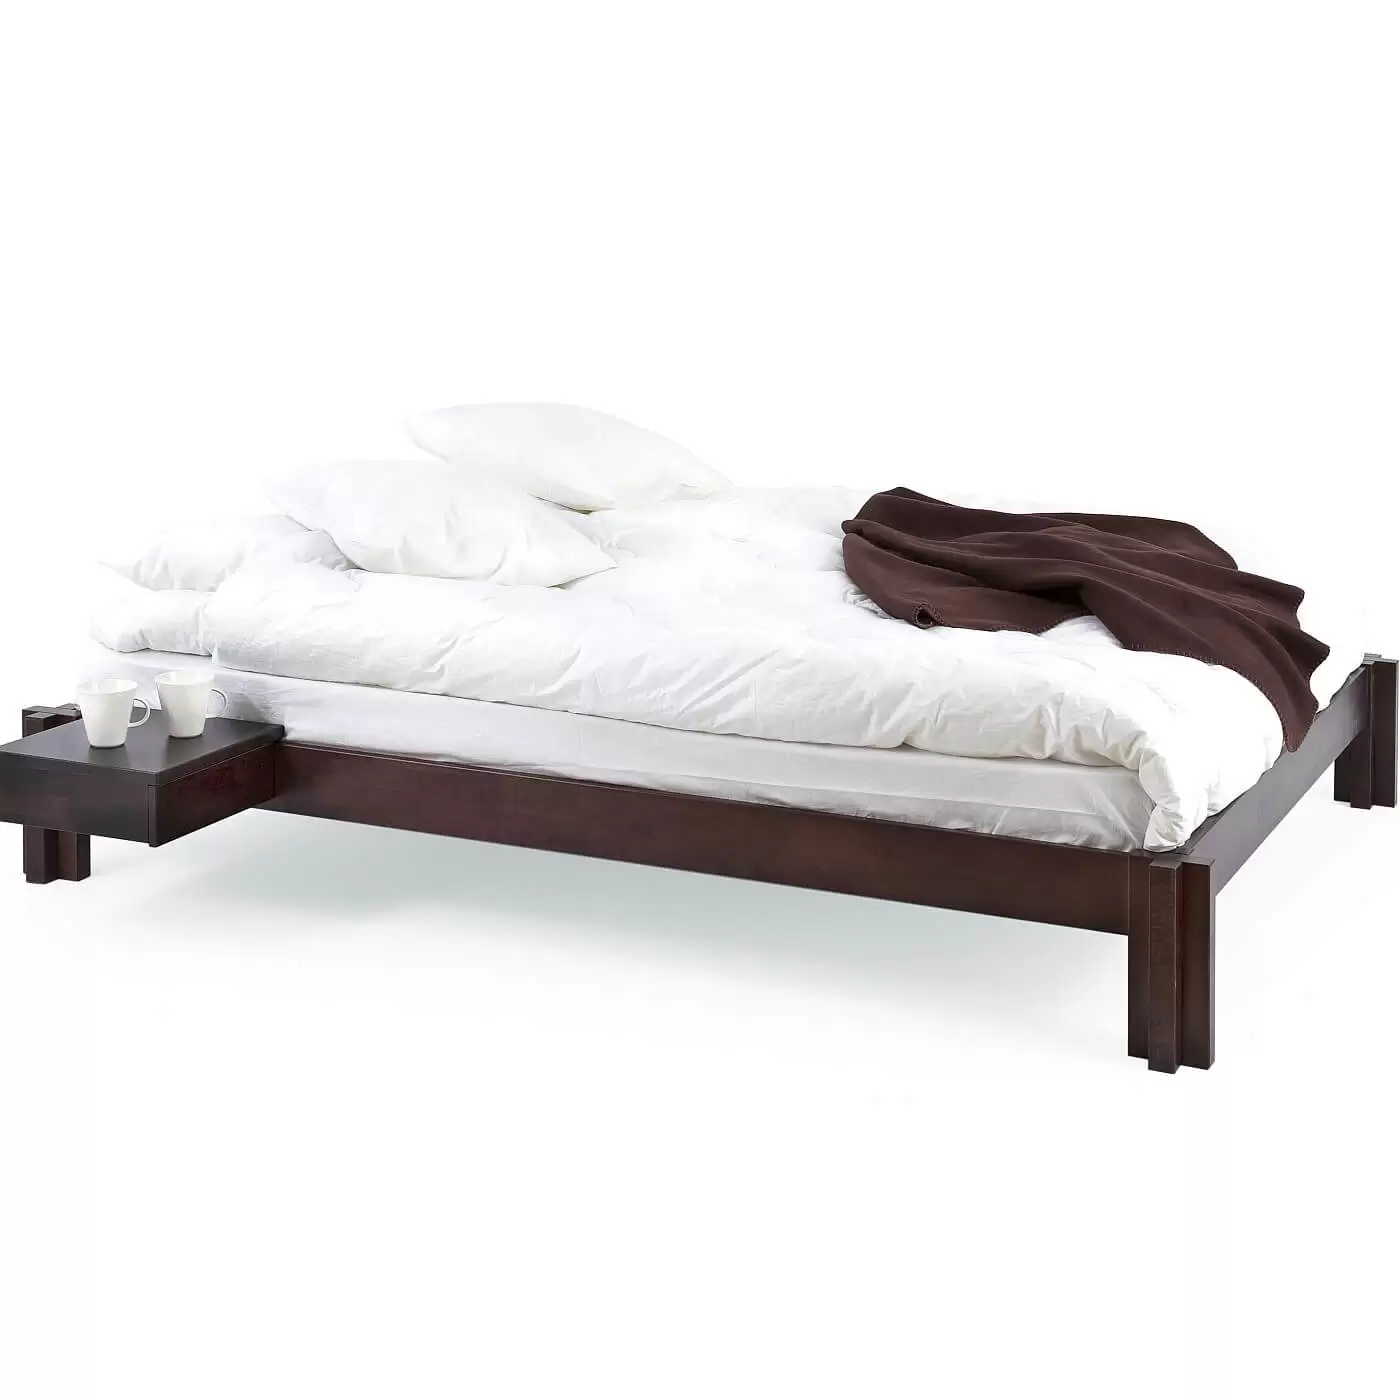 Niskie łóżko wenge MORI. Łóżko nowoczesne na poddasze widoczne w całości. Na łóżku z drewna w kolorze wenge leży materac, biała kołdra, poduszki i koc. Przy łóżku przywieszony stolik nocny wenge z 2 białymi kubkami. Skandynawski design